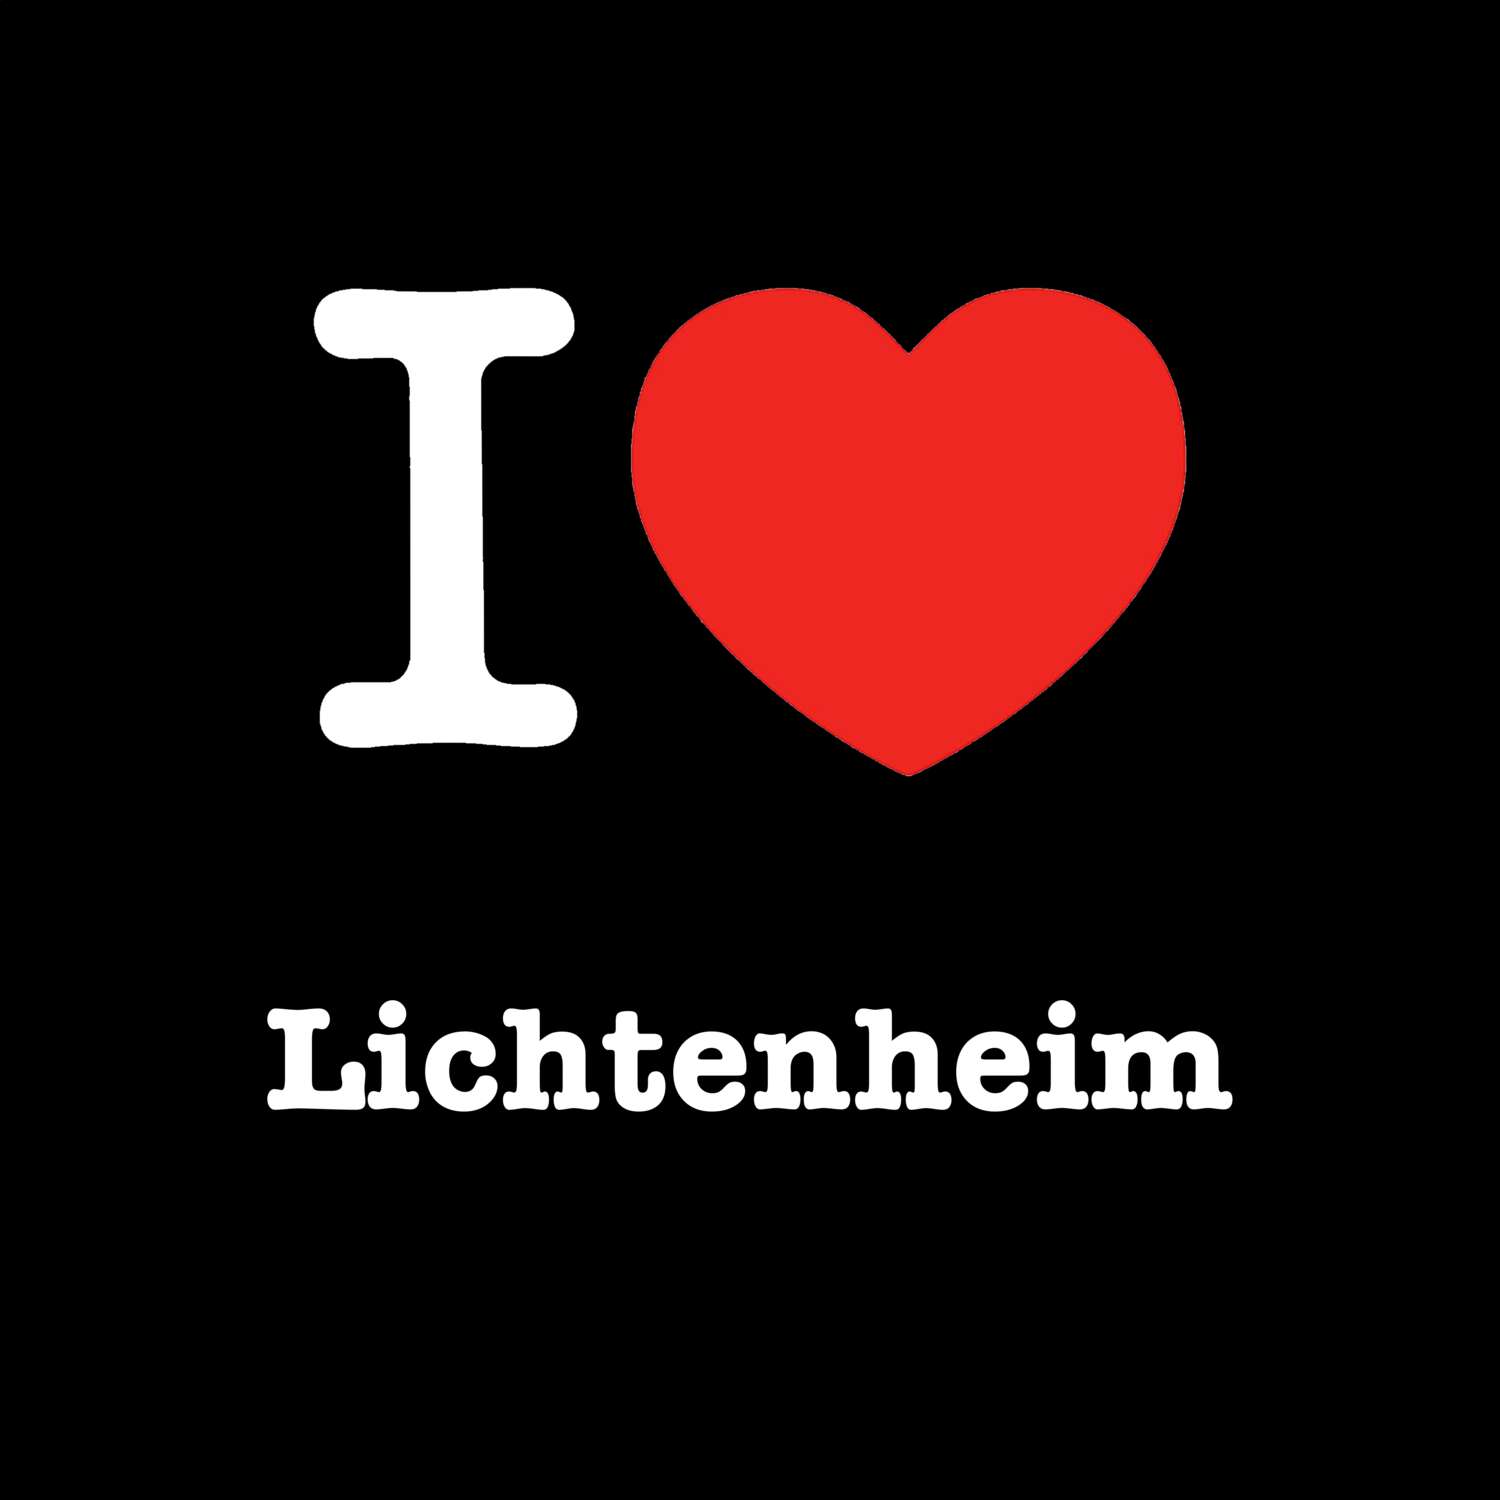 Lichtenheim T-Shirt »I love«